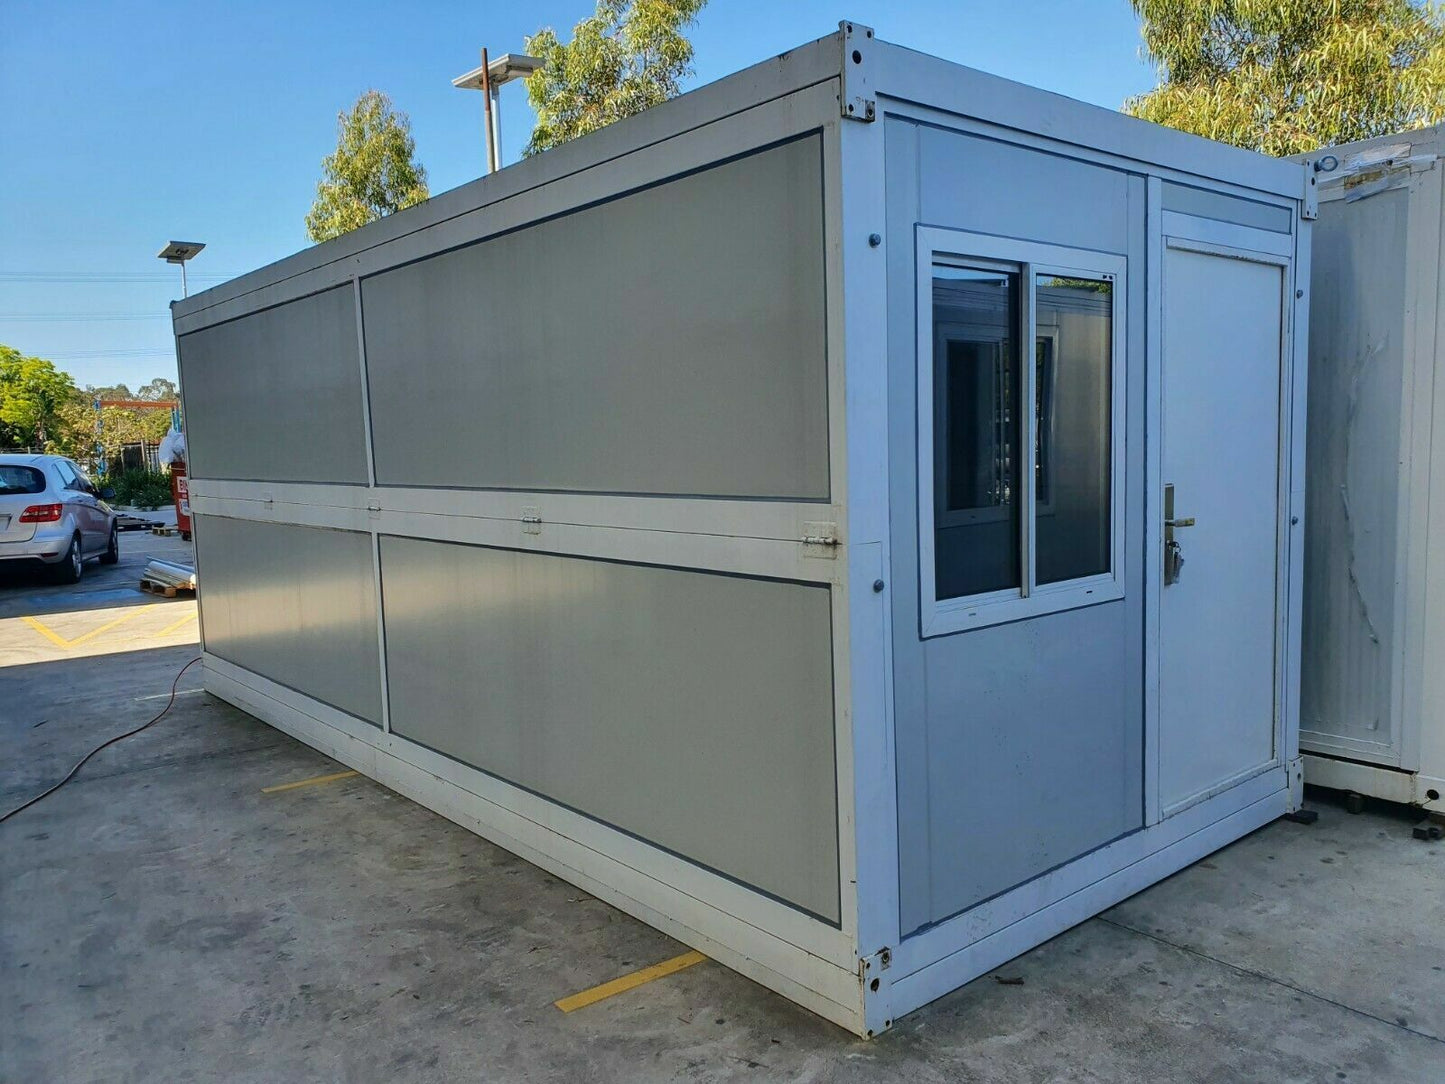 Casa, modulo mobile, ufficio box prefabbricato, container pieghevole, 15mq